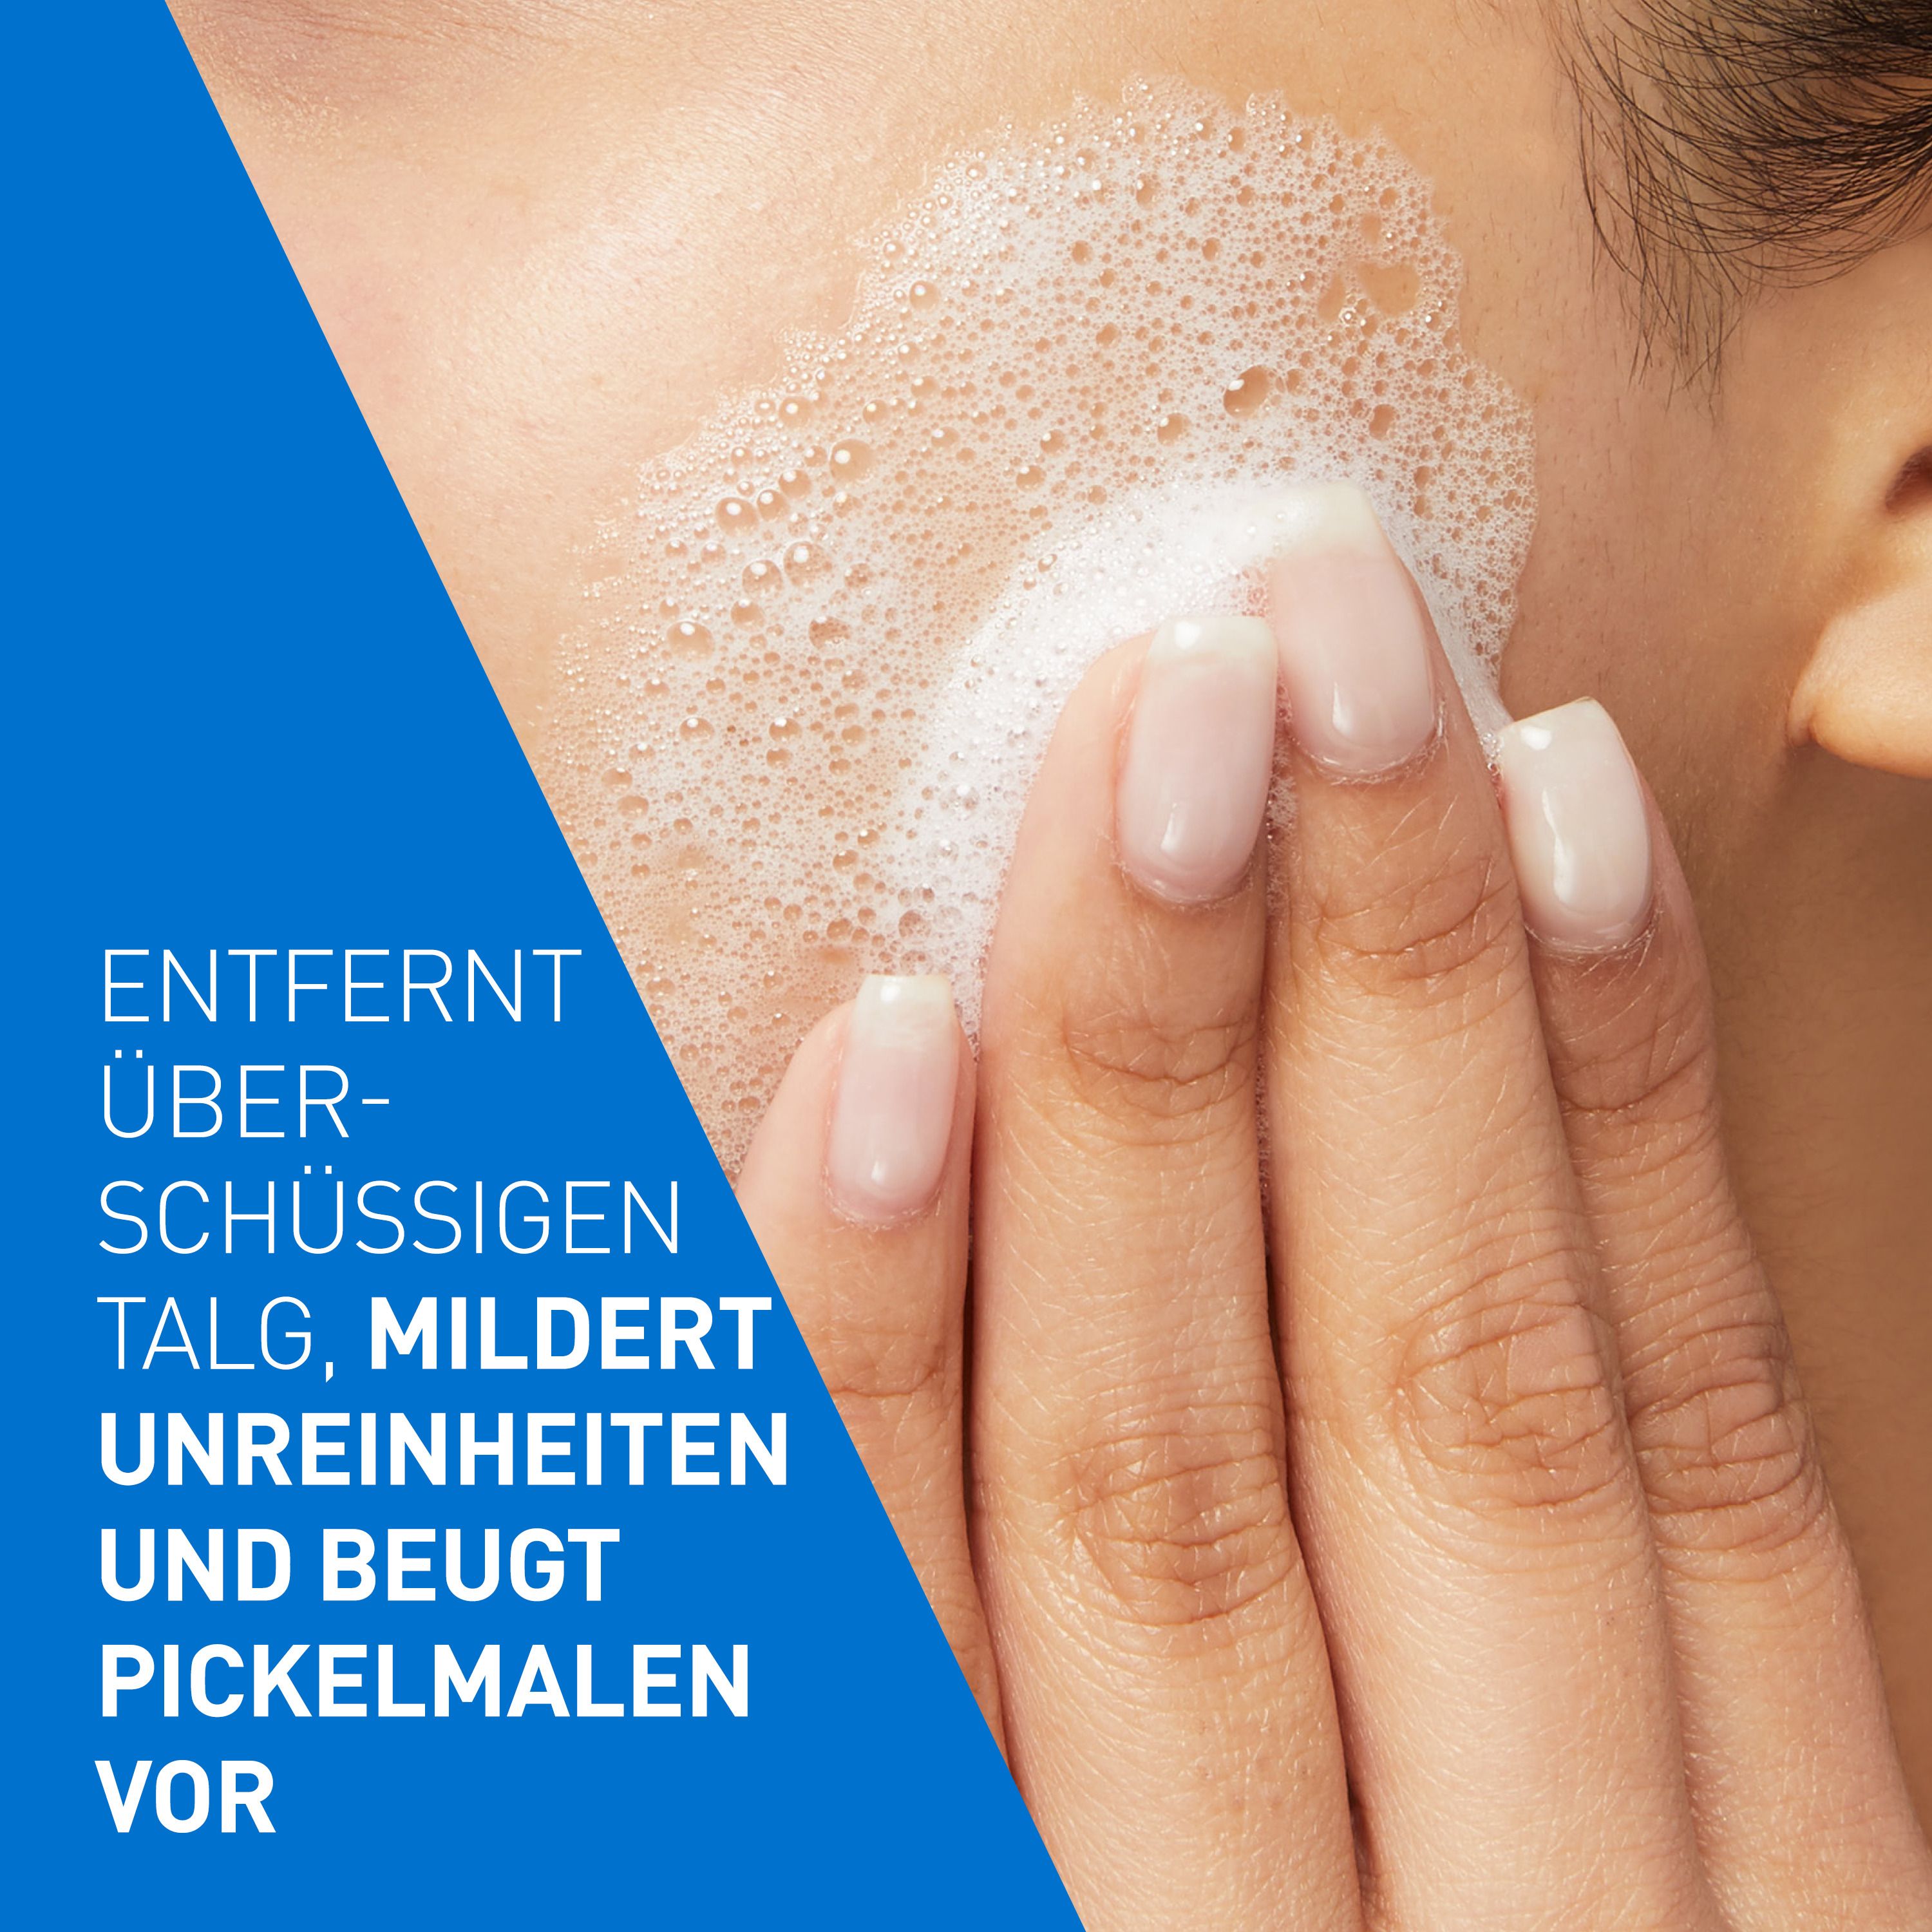 CeraVe Porentiefe Reinigung: Schäumendes Reinigungsgel mit Salicylsäure für das Gesicht bei unreiner und zu Akne neigender Haut